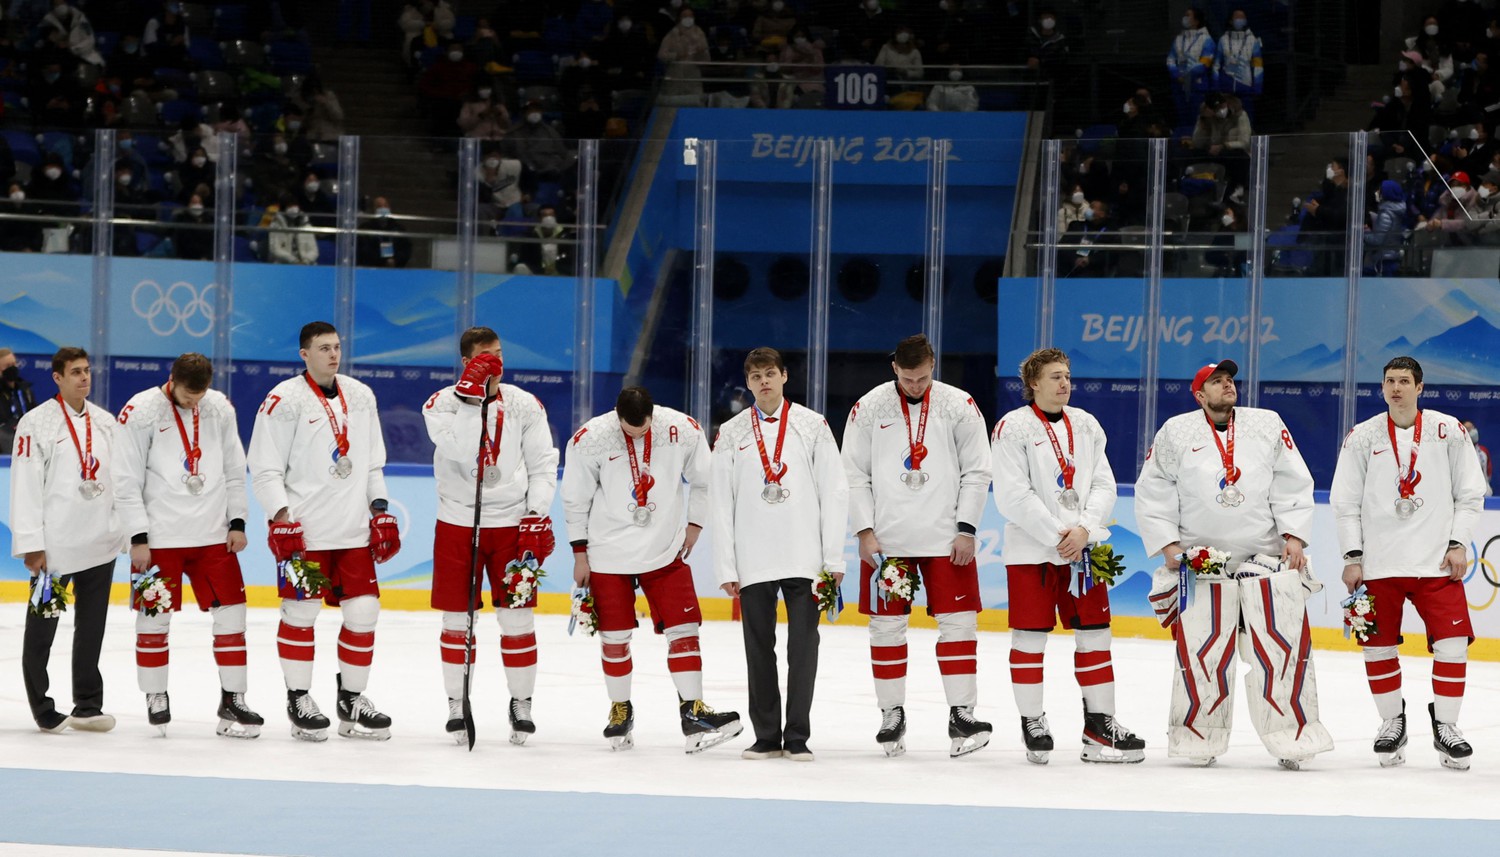 Сборную России могут отправить в первый дивизион чемпионата мира по хоккею